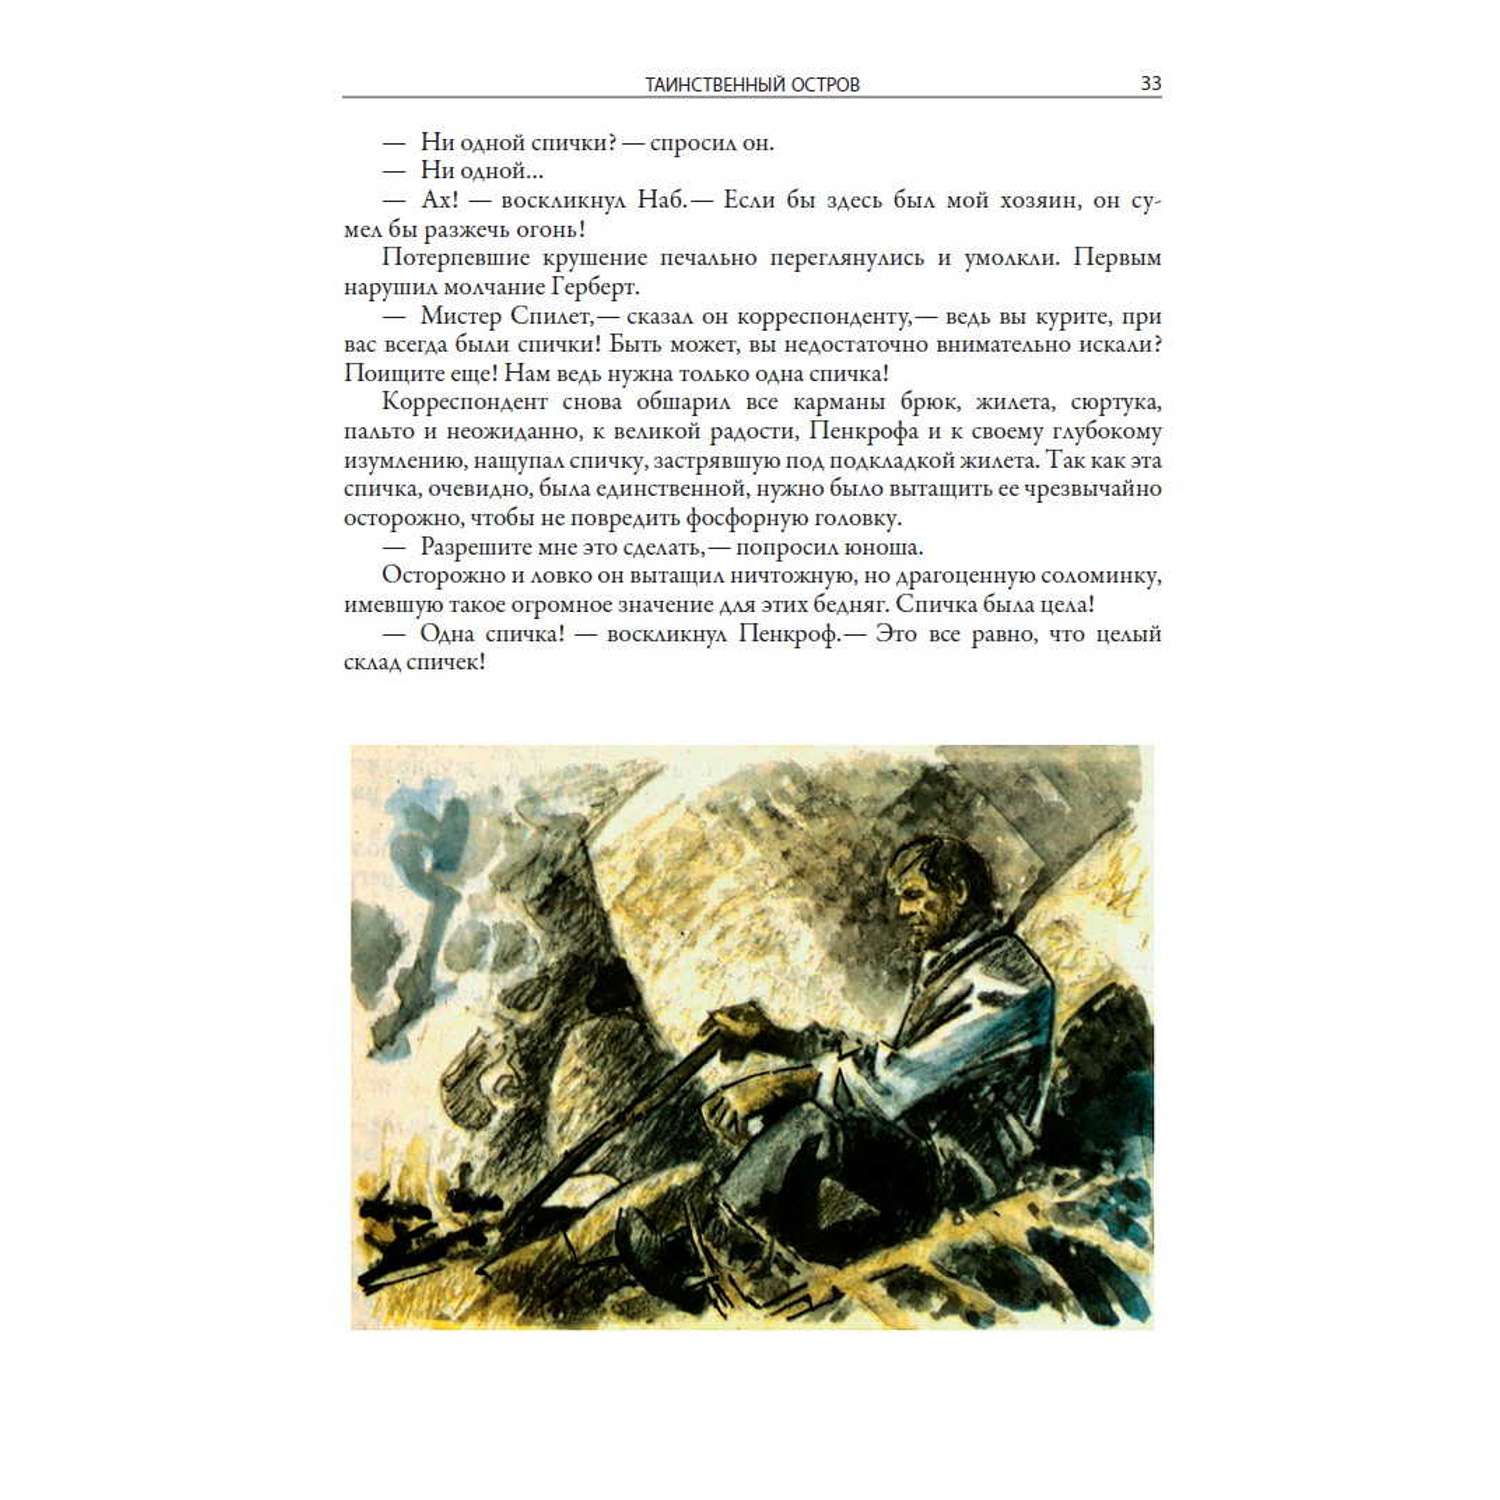 Книга СЗКЭО БМЛ Верн Таинственный остров иллюстрации Луганского - фото 9